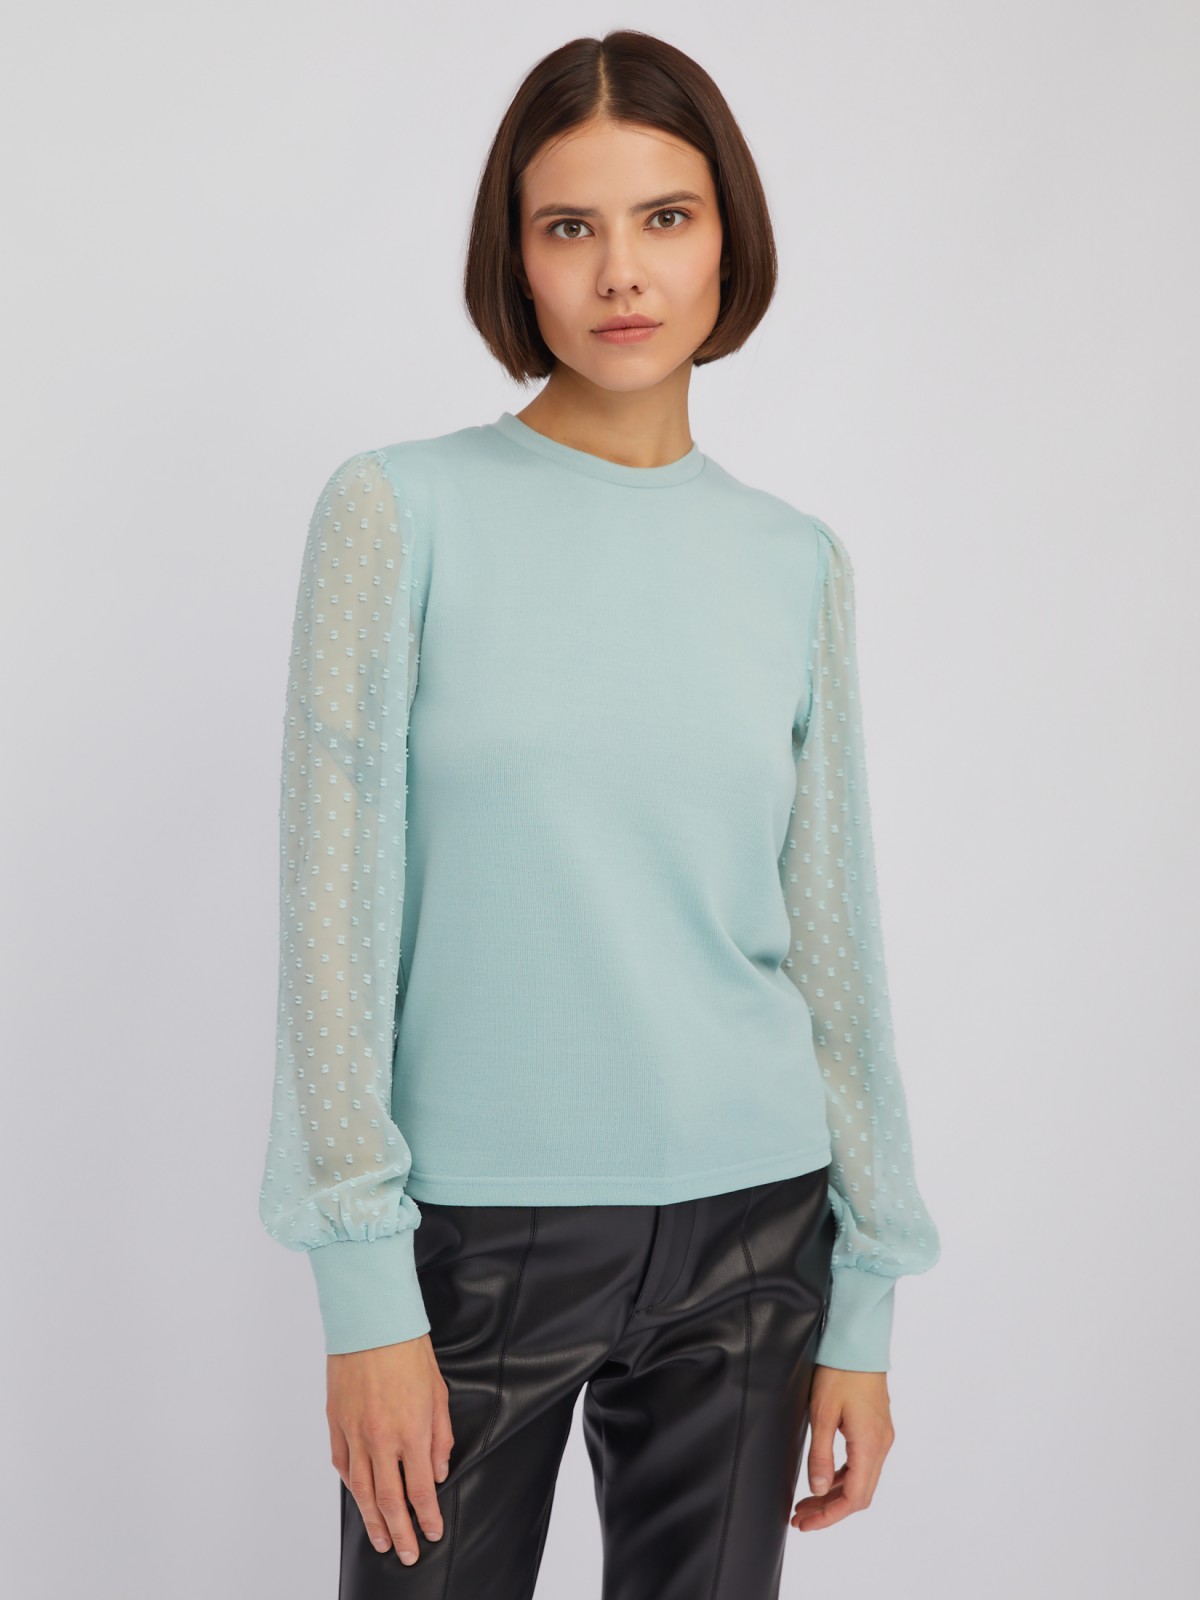 Трикотажный топ-блузка с акцентом на рукавах zolla 024113126023, цвет мятный, размер XS - фото 3